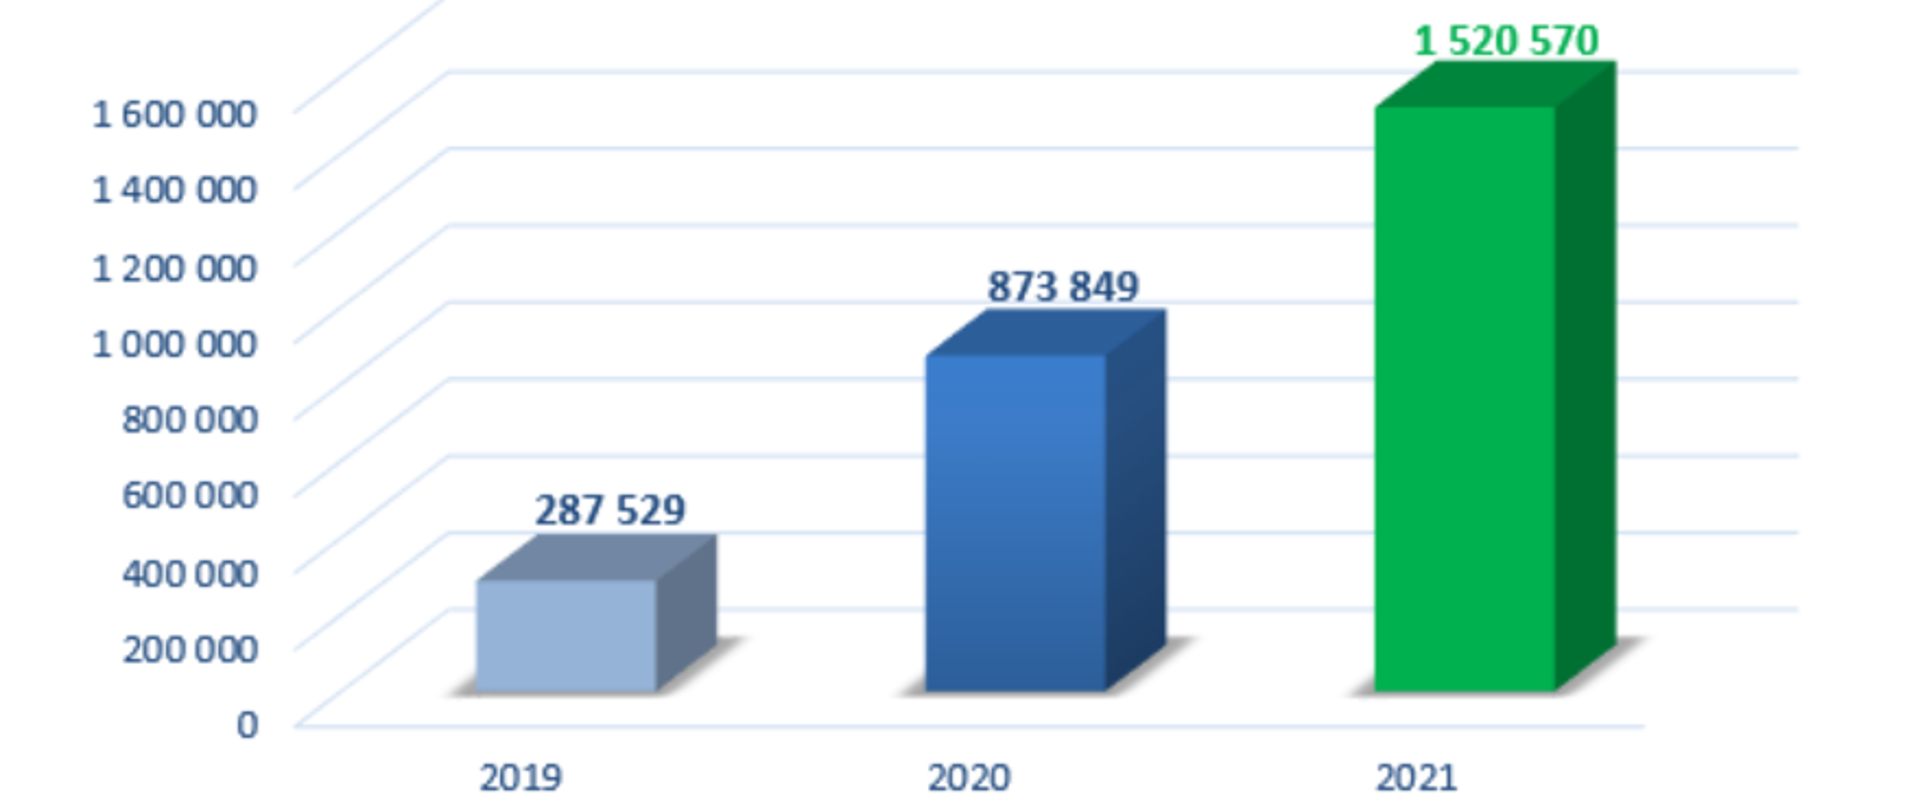 Wykres przedstawiający liczbę zapytań z ewidencji gruntów i budynków do elektronicznej księgi wieczystej w latach 2019-2021: 2019 - 287529, 2020 - 873849, 2021 - 1520570